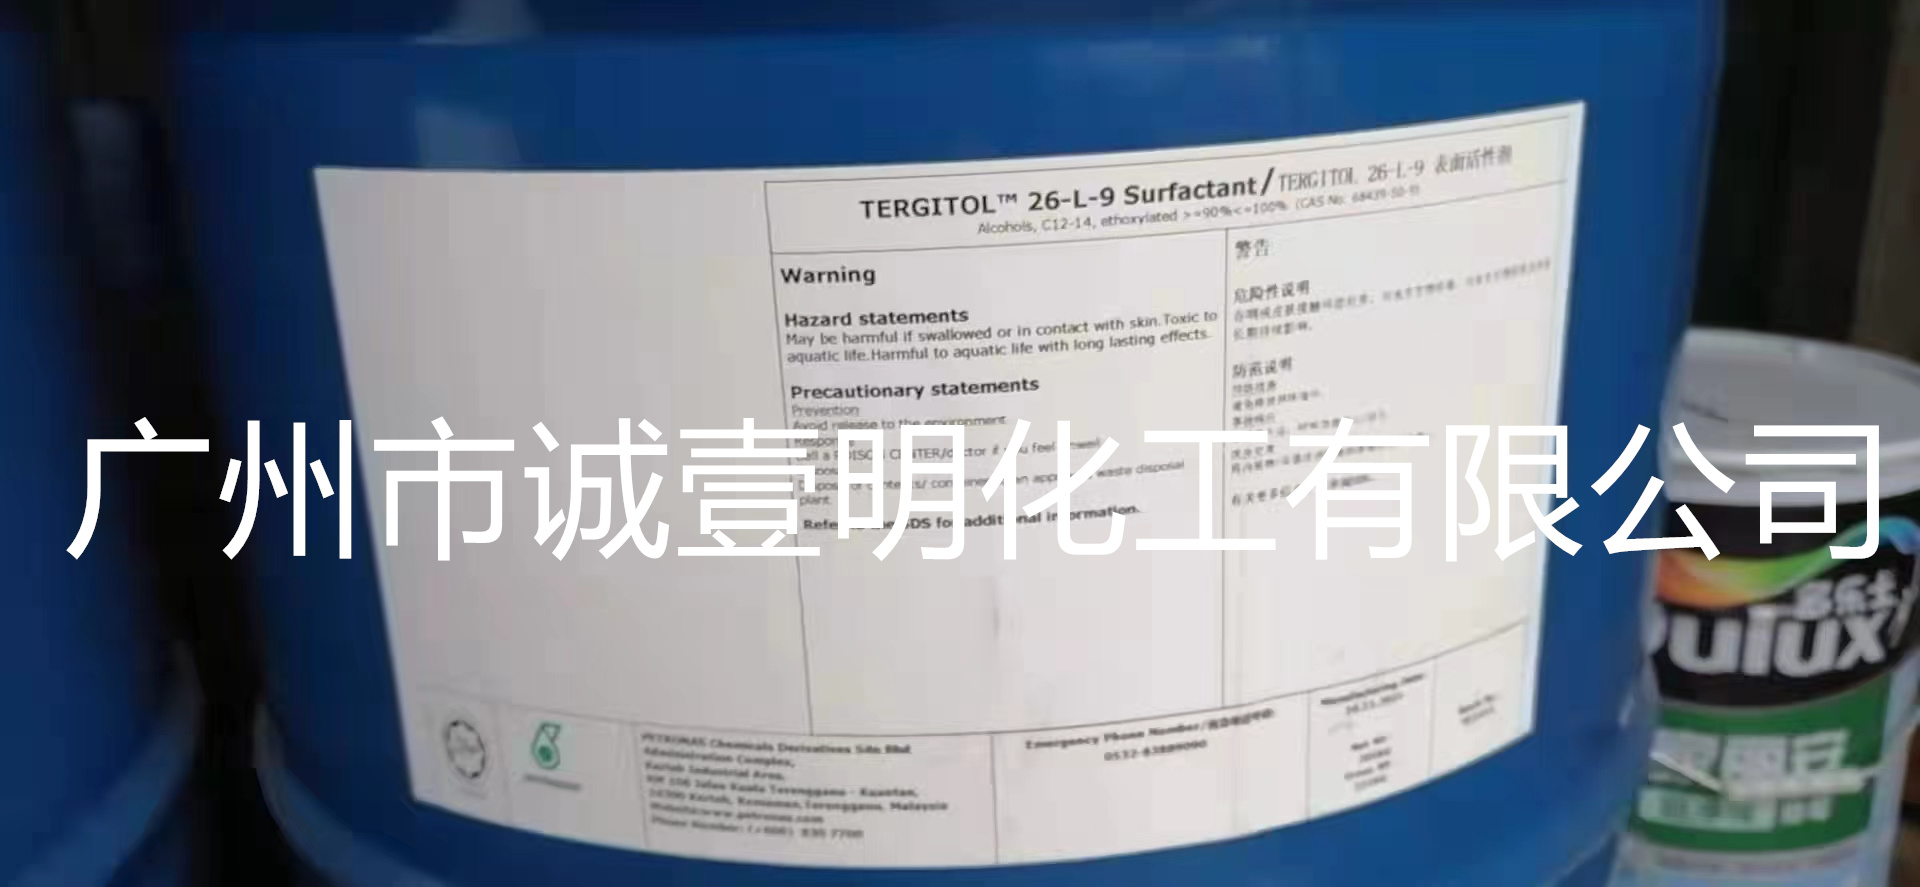 广州洗涤剂26-L-9